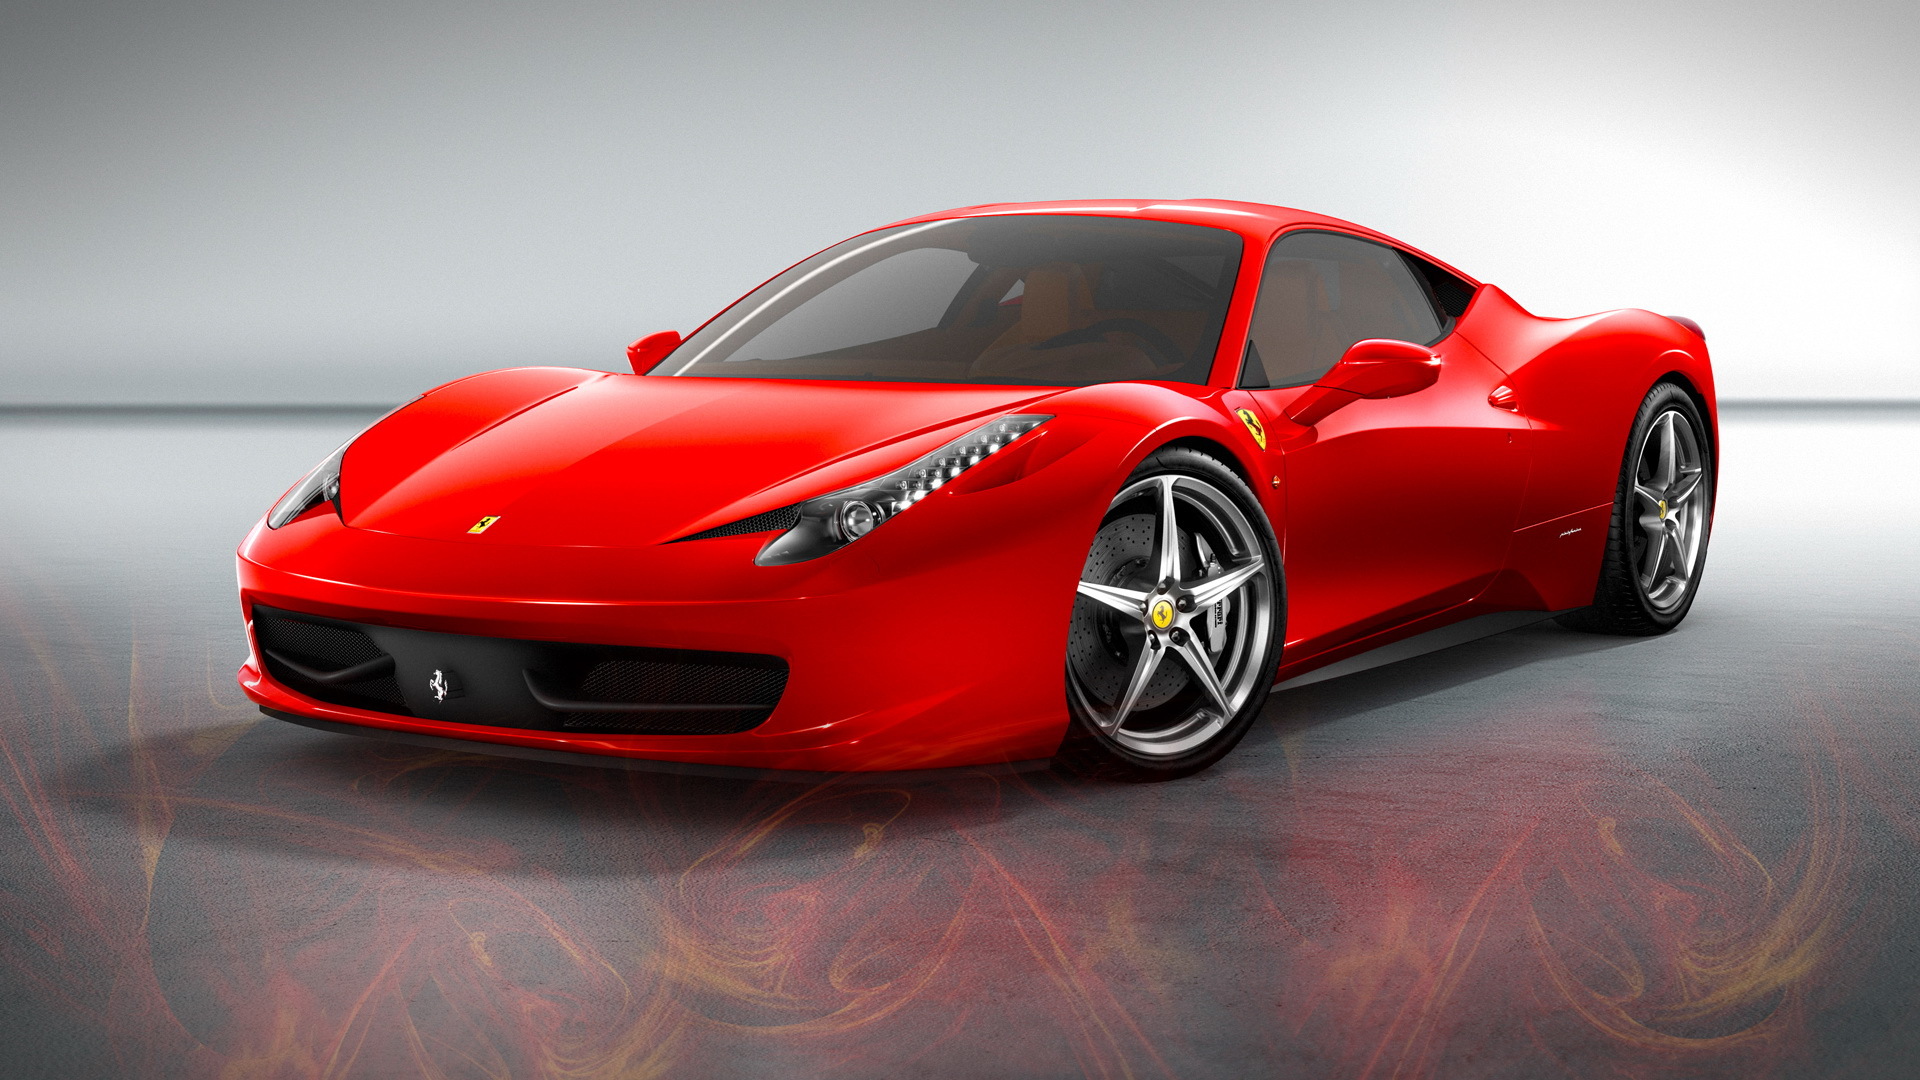 Download mobile wallpaper Ferrari, Auto, Transport for free.